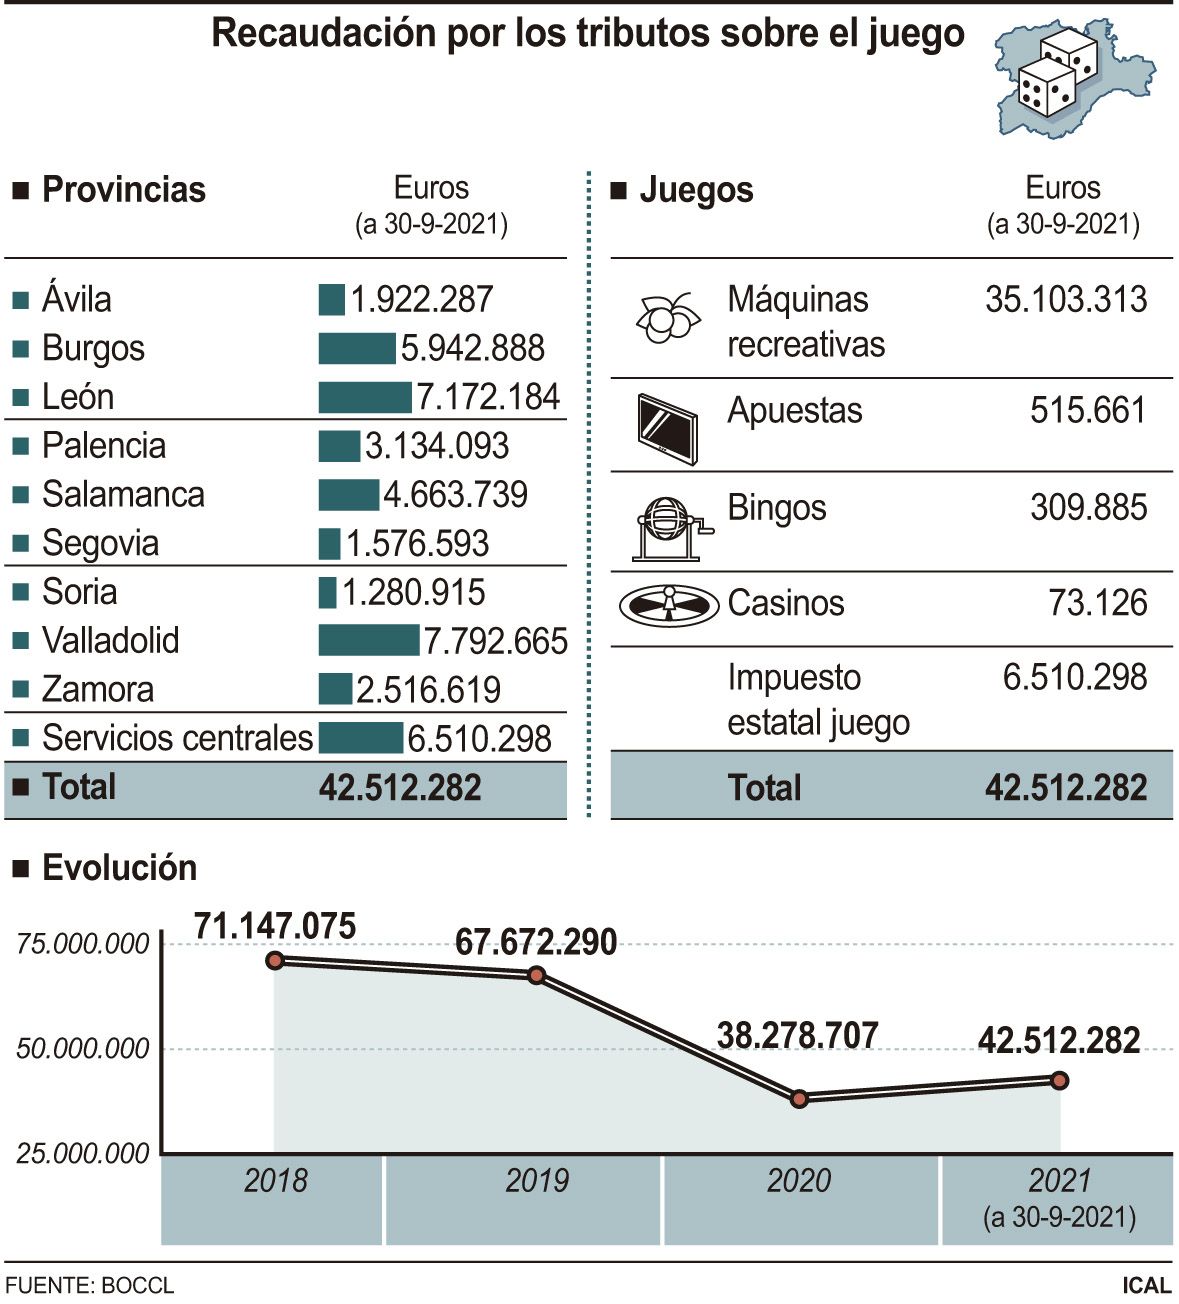 Datos de impuestos al juego recaudados en Castilla y León en cuatro años. Gráfico Ical.